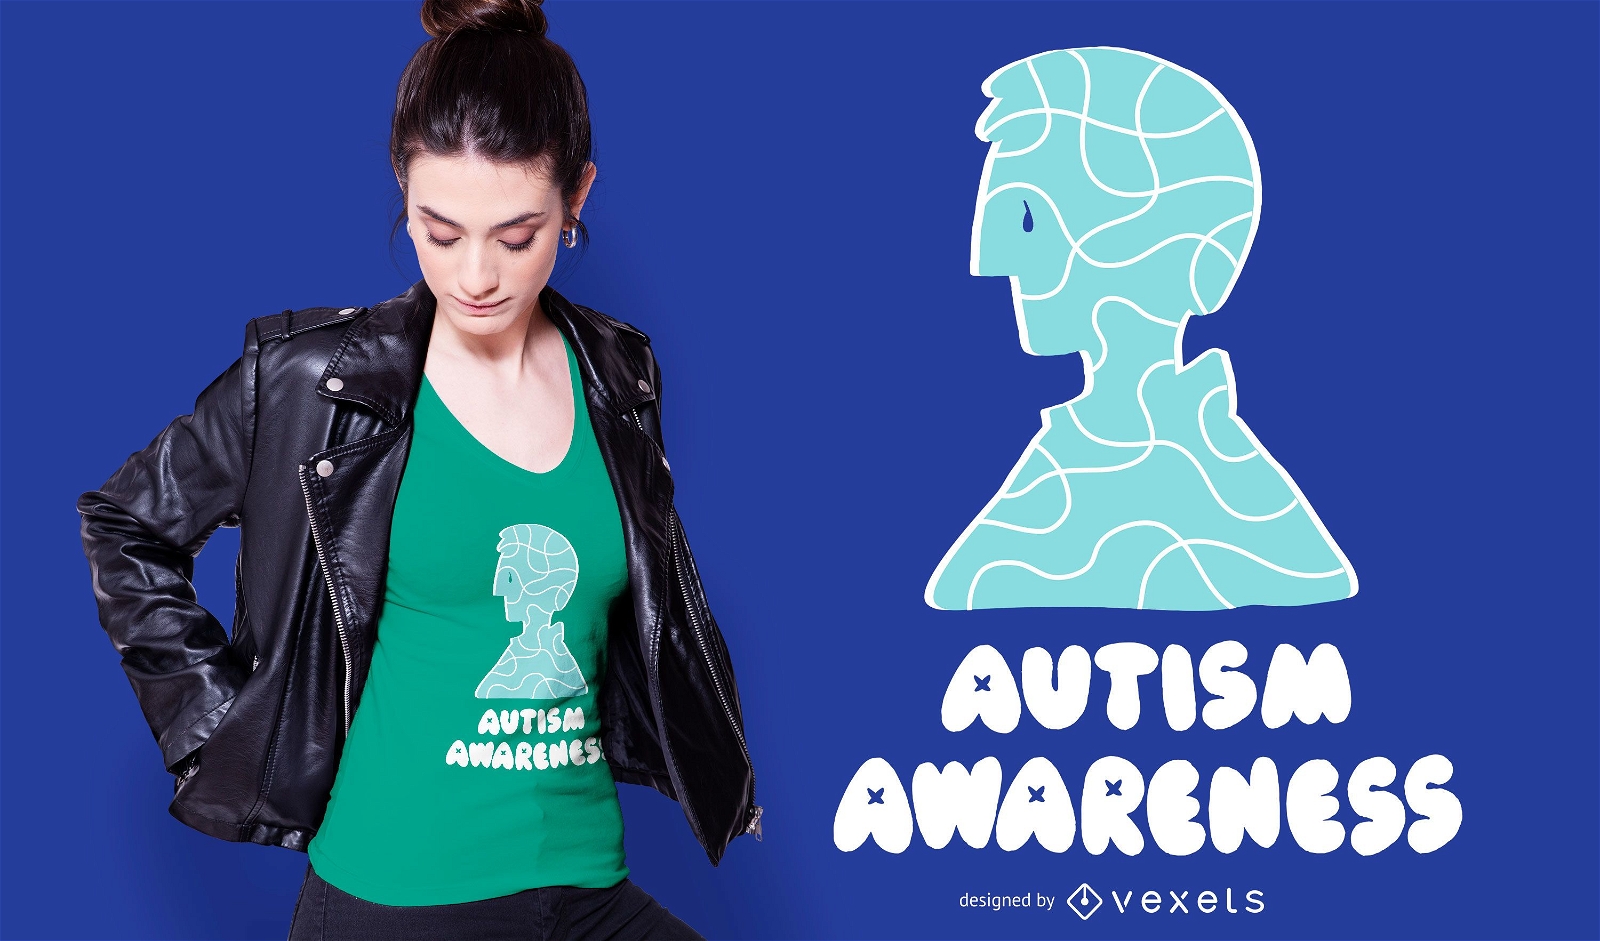 Autism Awareness Support T-shirt Design